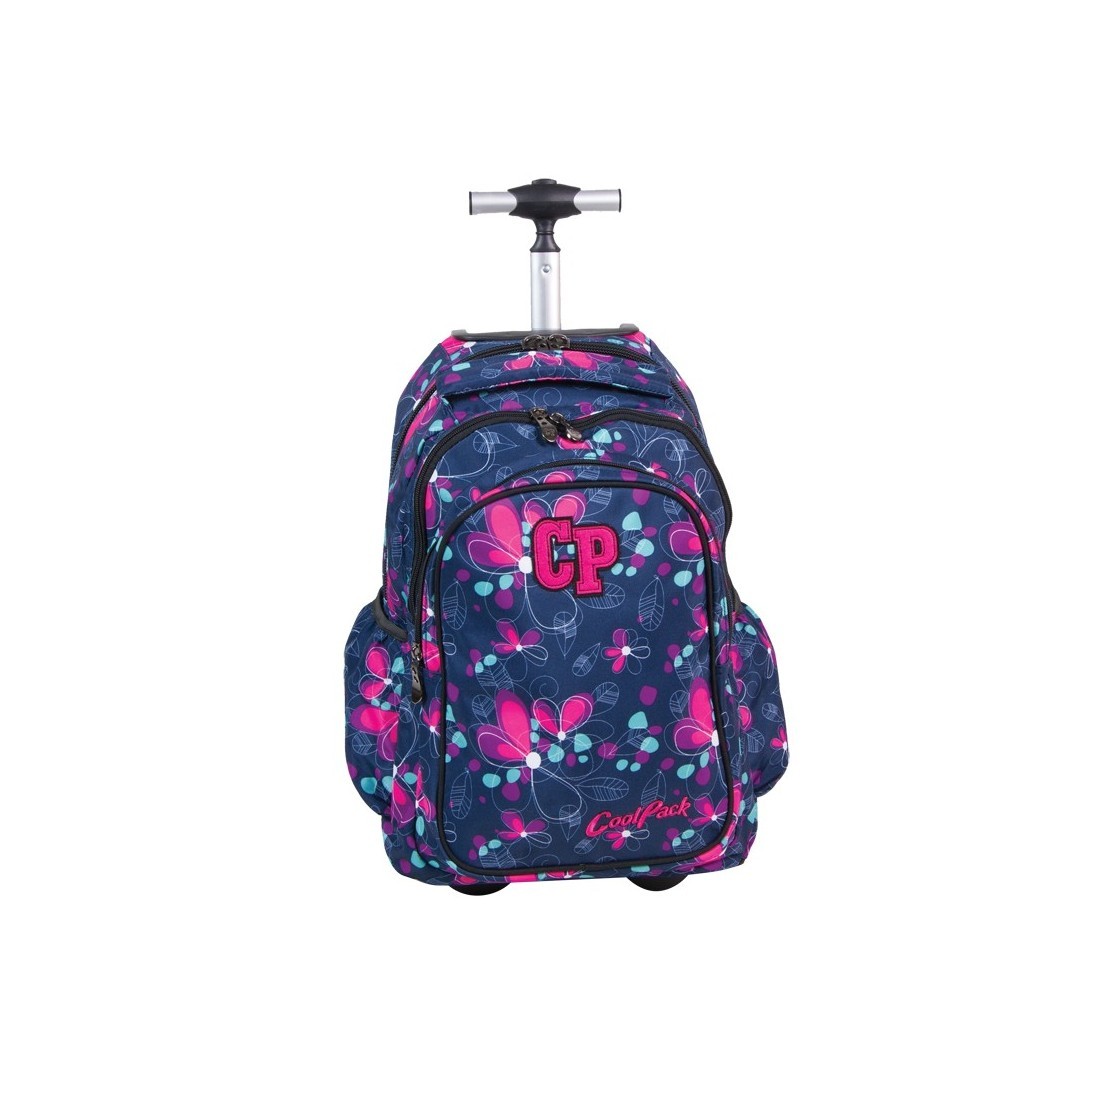 Plecak CoolPack na kółkach dla dziewczynki w kwiatki - CP 201